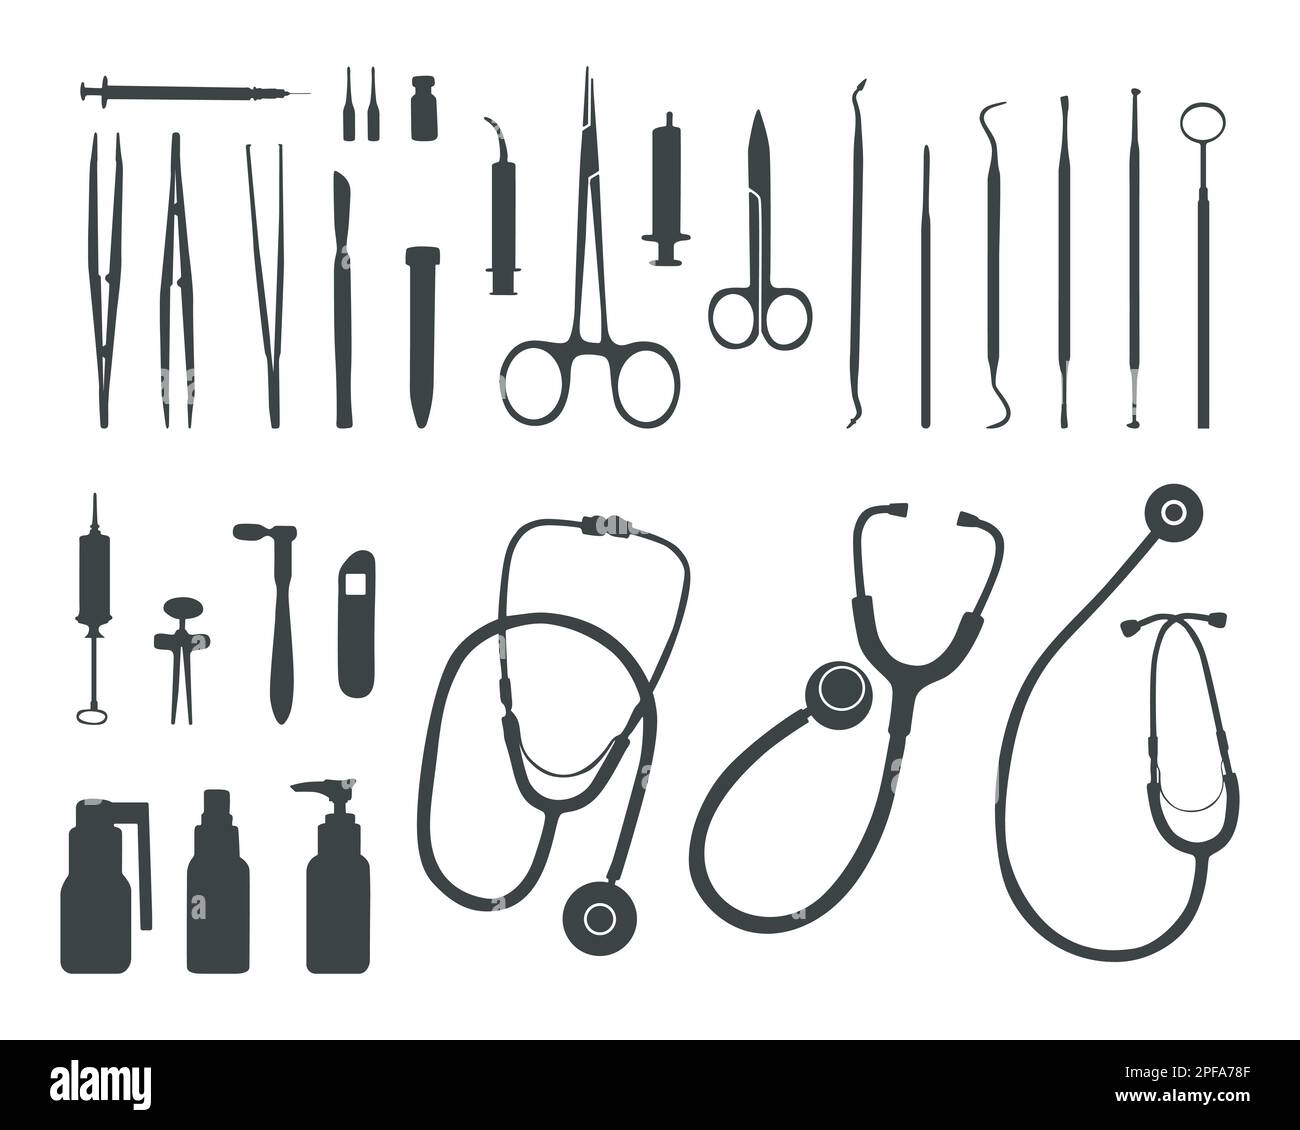 Medizinische Werkzeuge Silhouette, Doktor Werkzeuge Silhouette, Medizinische Geräte SVG Stock Vektor